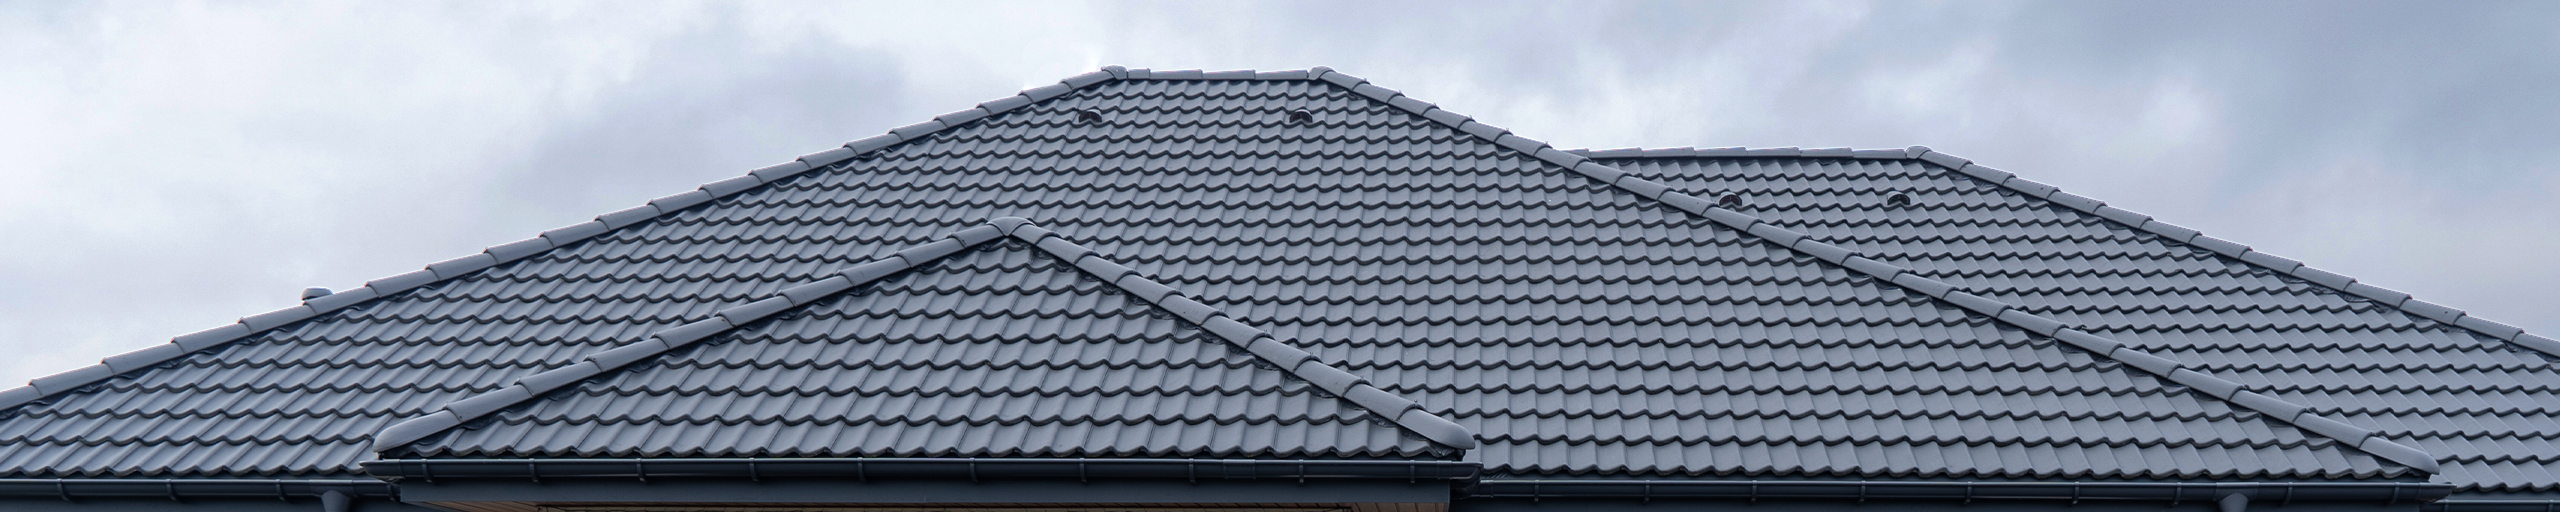 Jak vybrat střechu, která je odolná vůči silnému větru?